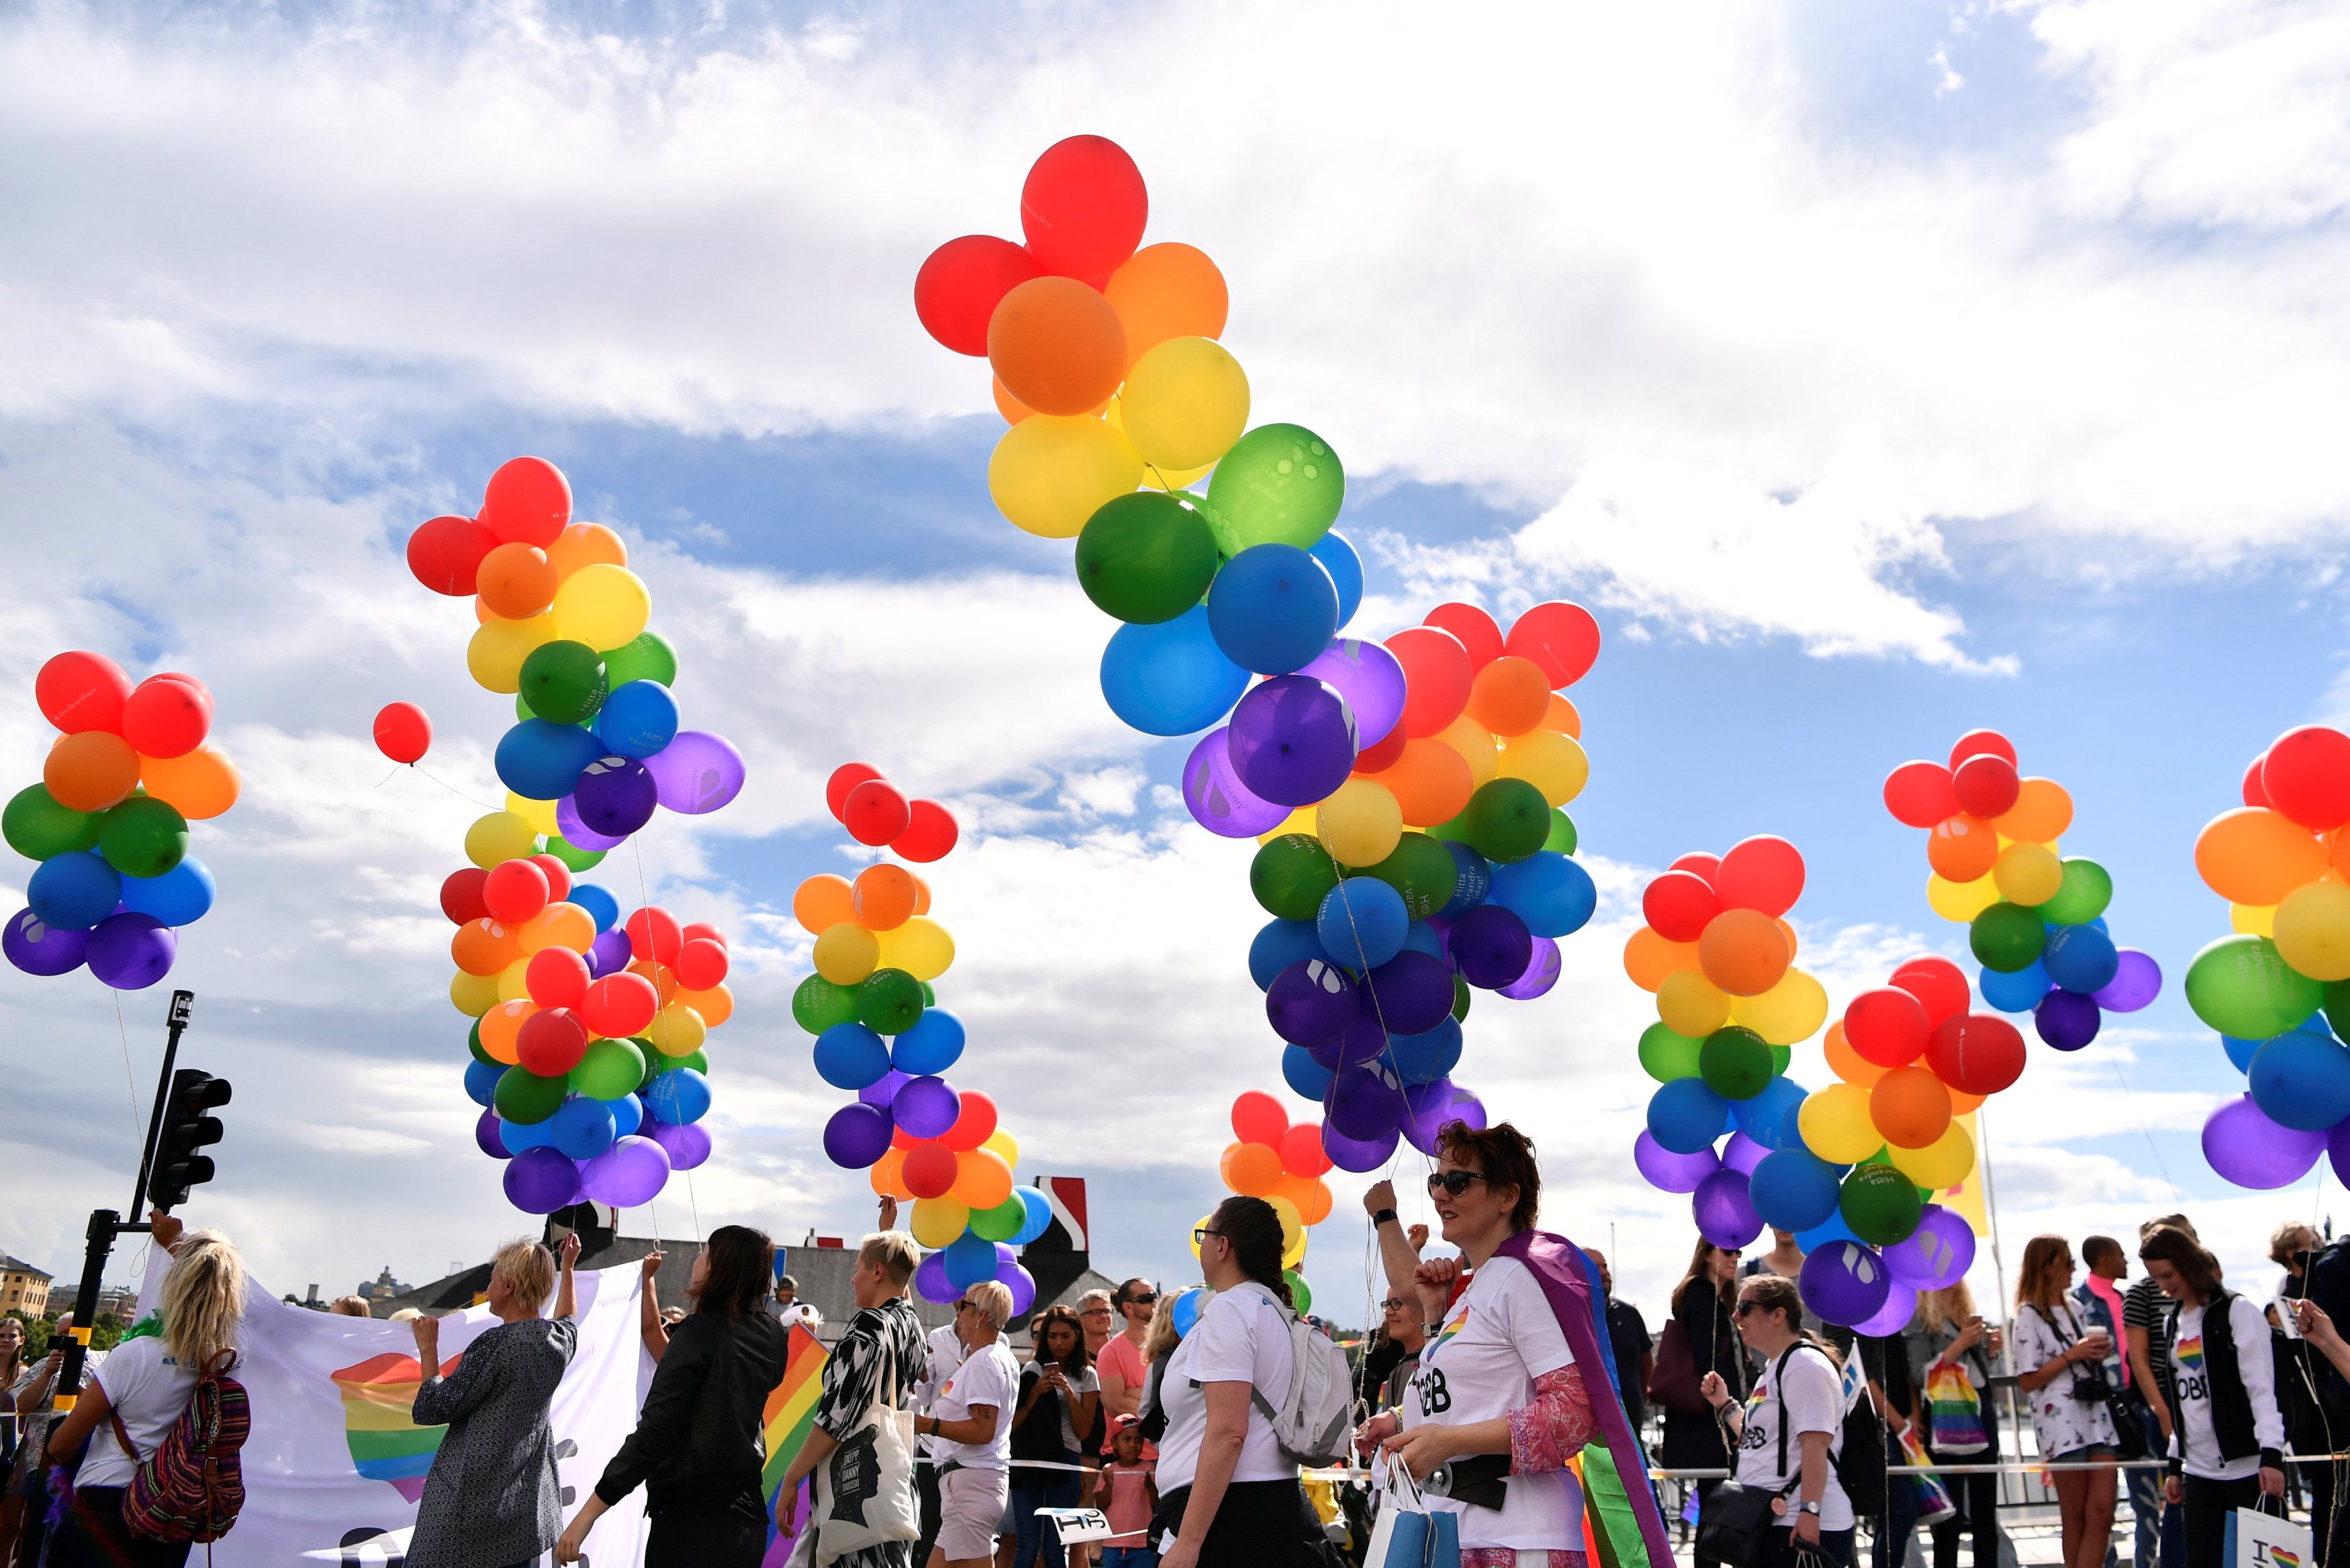 مثليين يرفعون بالونات ملونة خلال مسيرتهم فى السويد